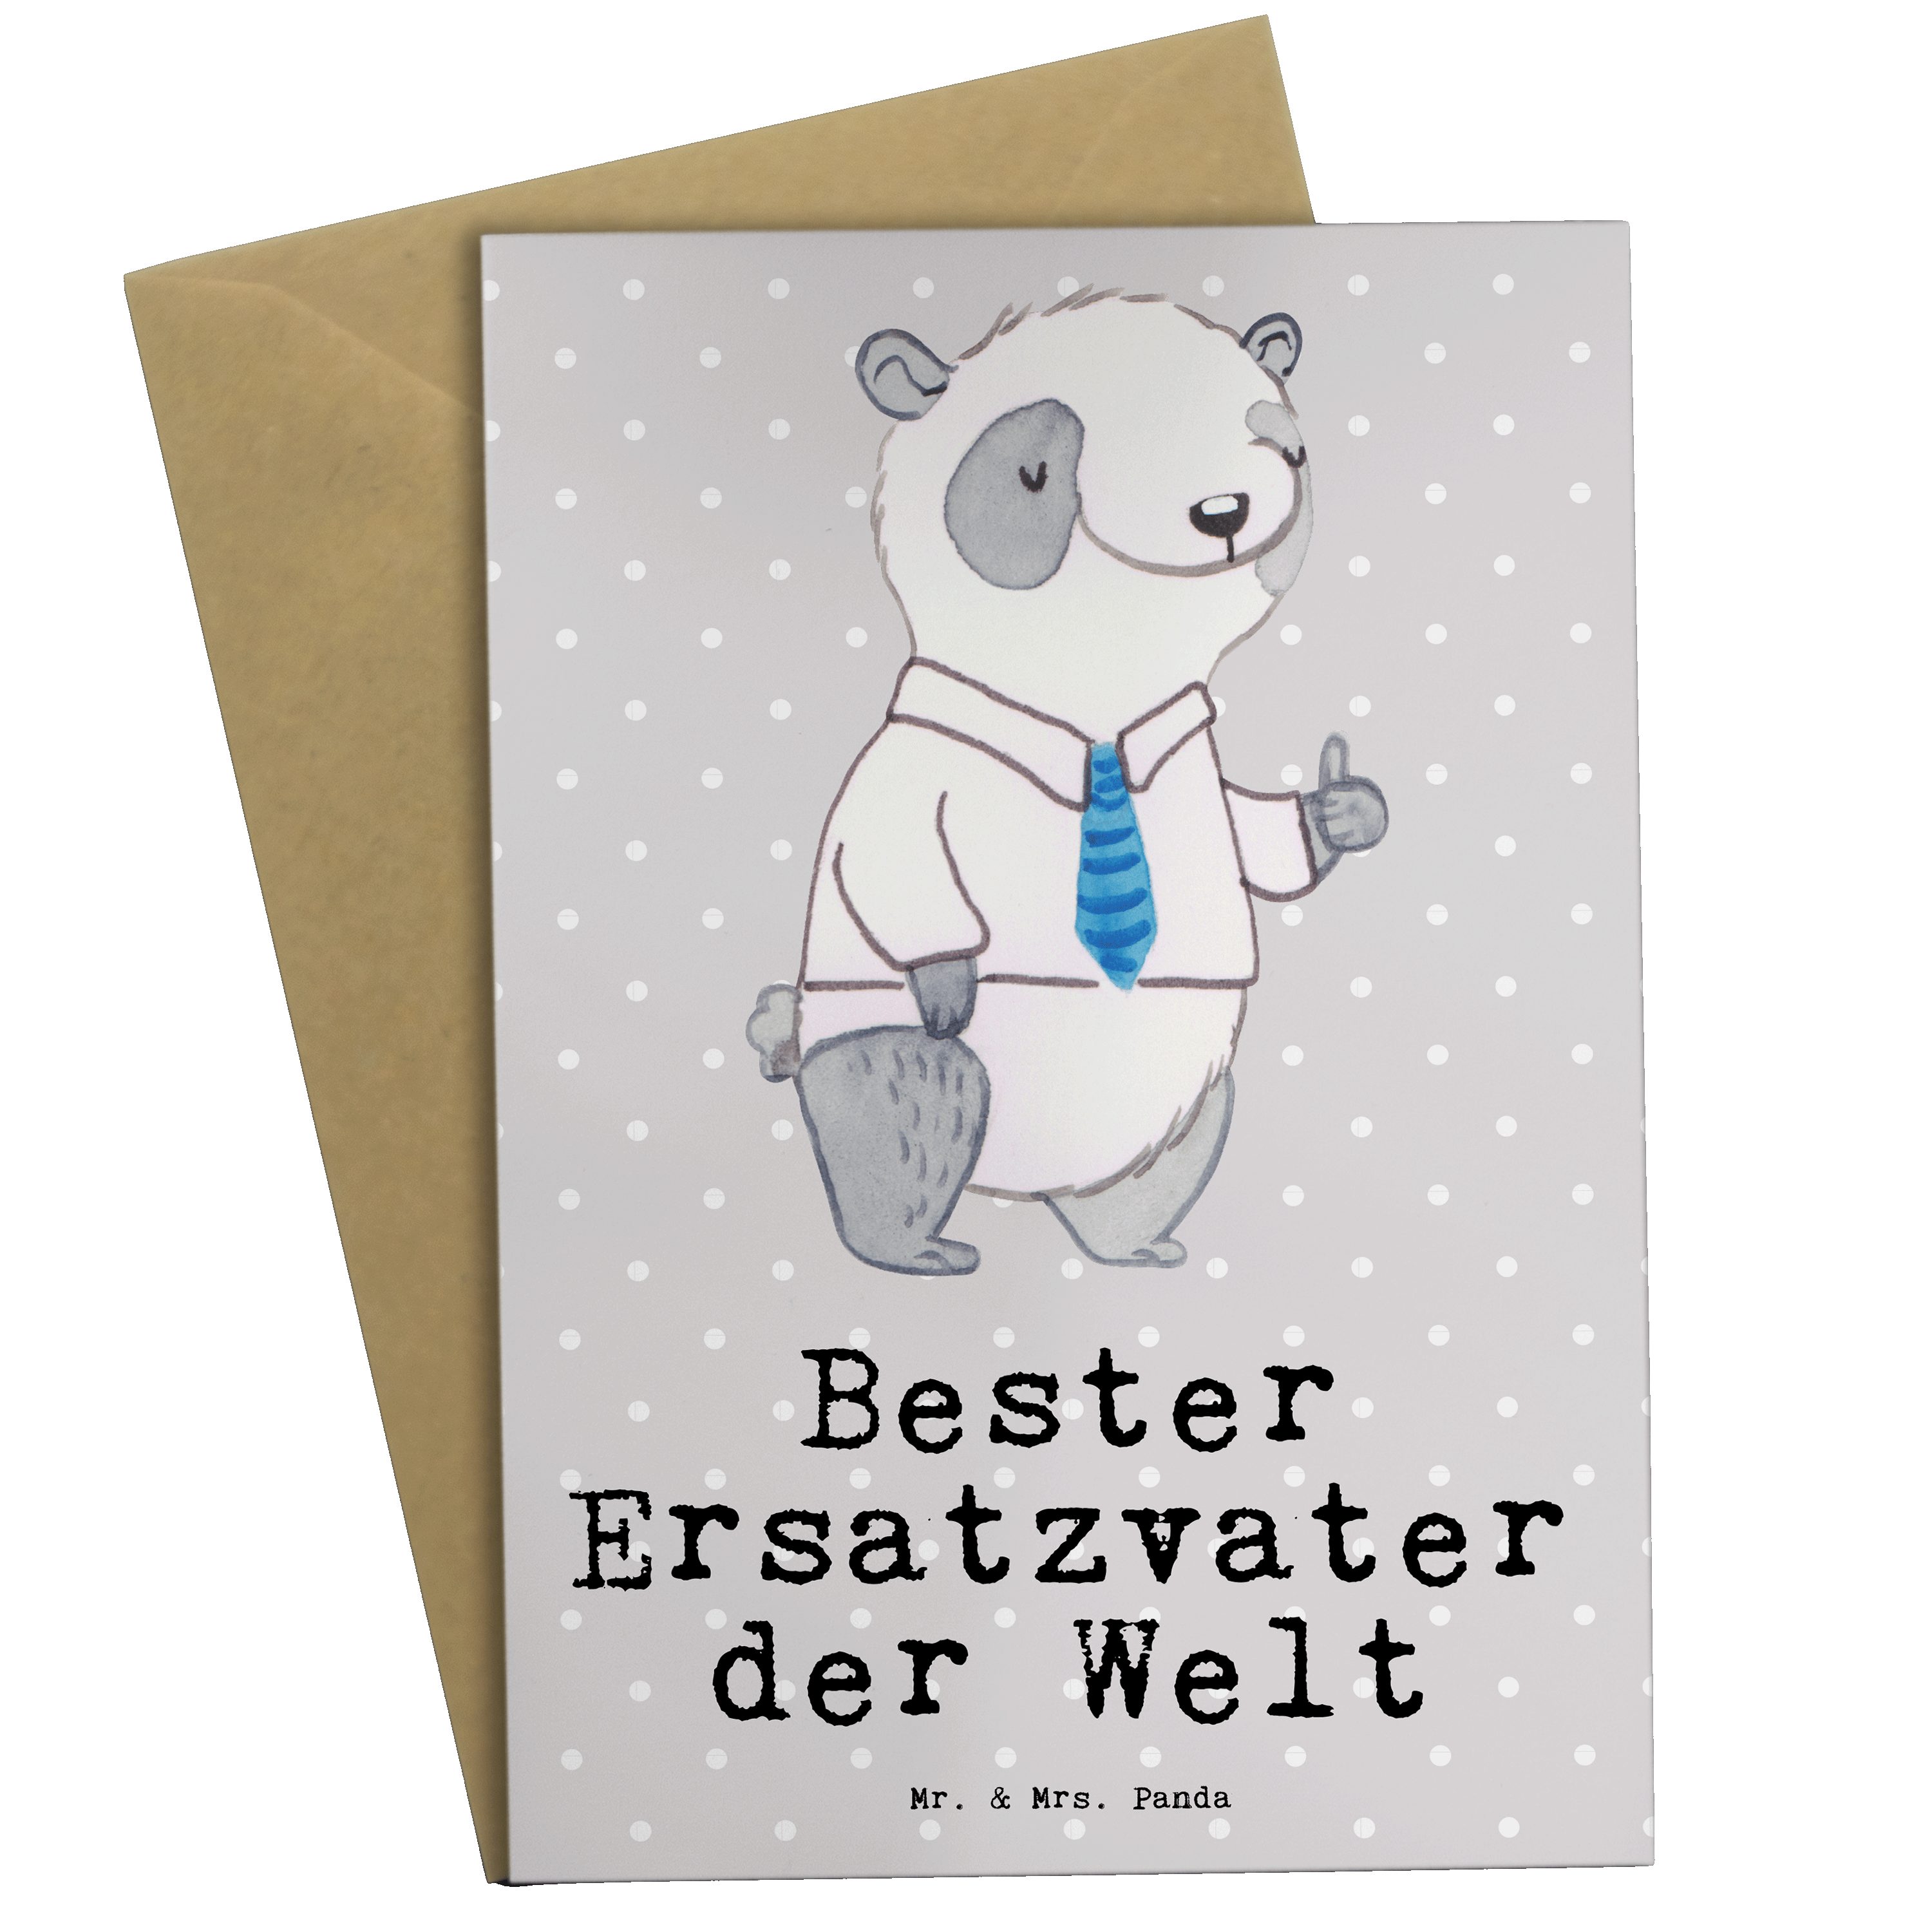 Mr. & Mrs. Panda Grußkarte Panda Bester Ersatzvater der Welt - Grau Pastell - Geschenk, Mitbring